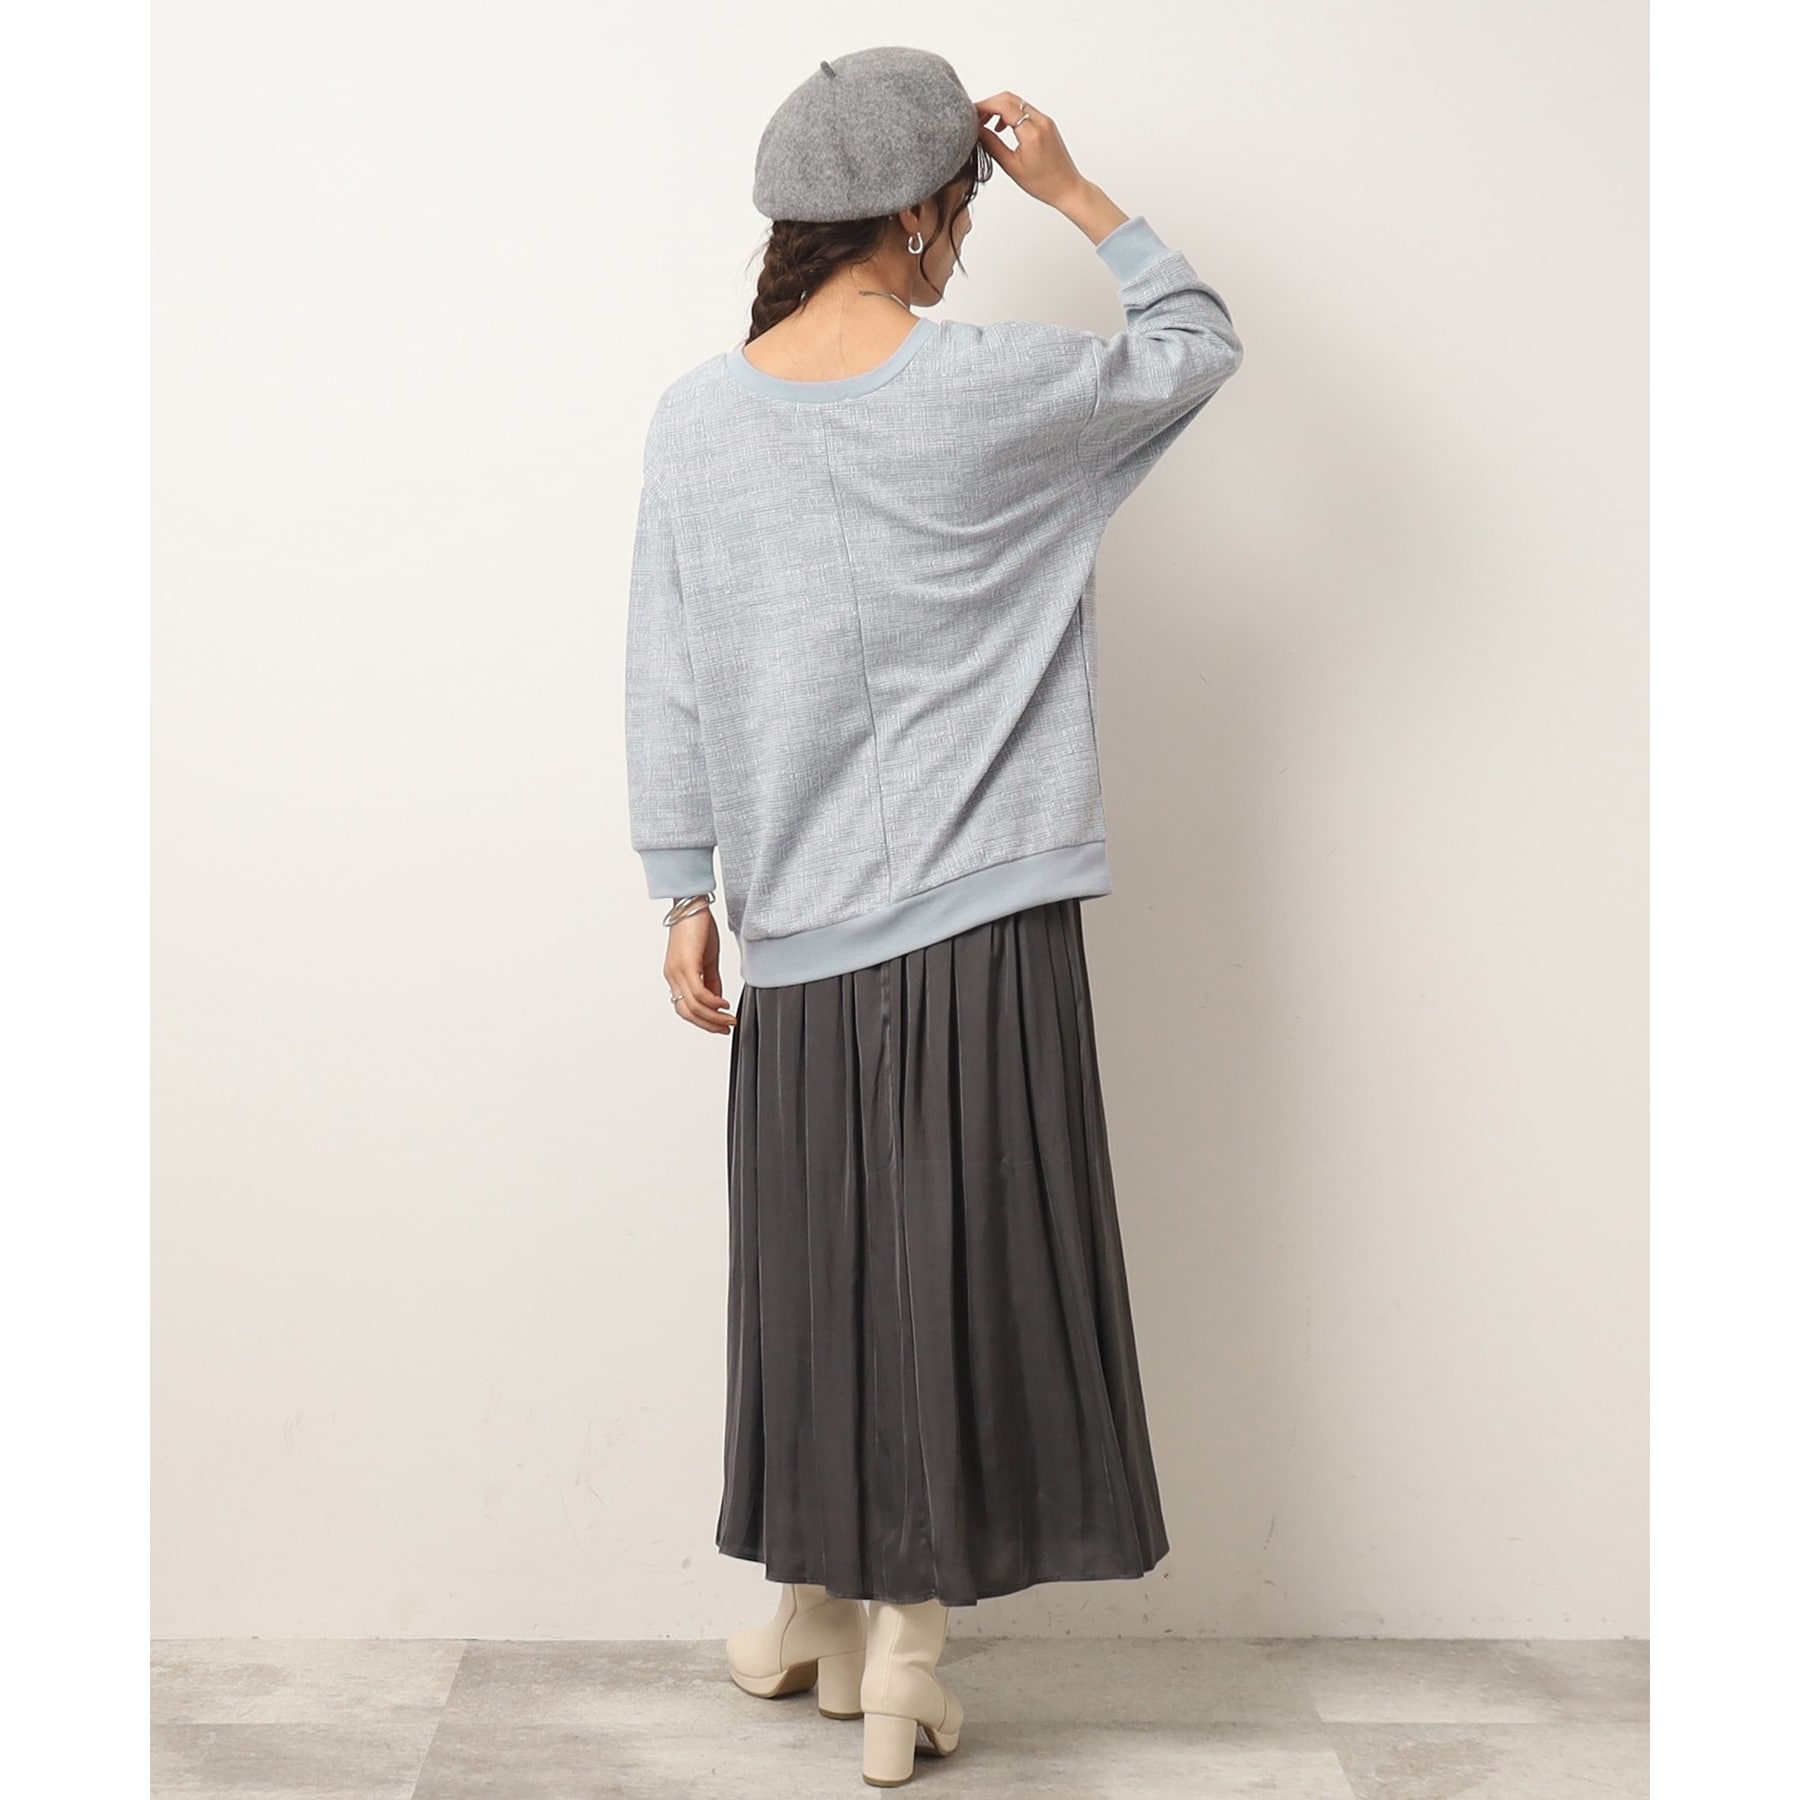 シューラルー/ドレスキップ(SHOO・LA・RUE/DRESKIP)の女性らしさあふれる サテンギャザースカート4